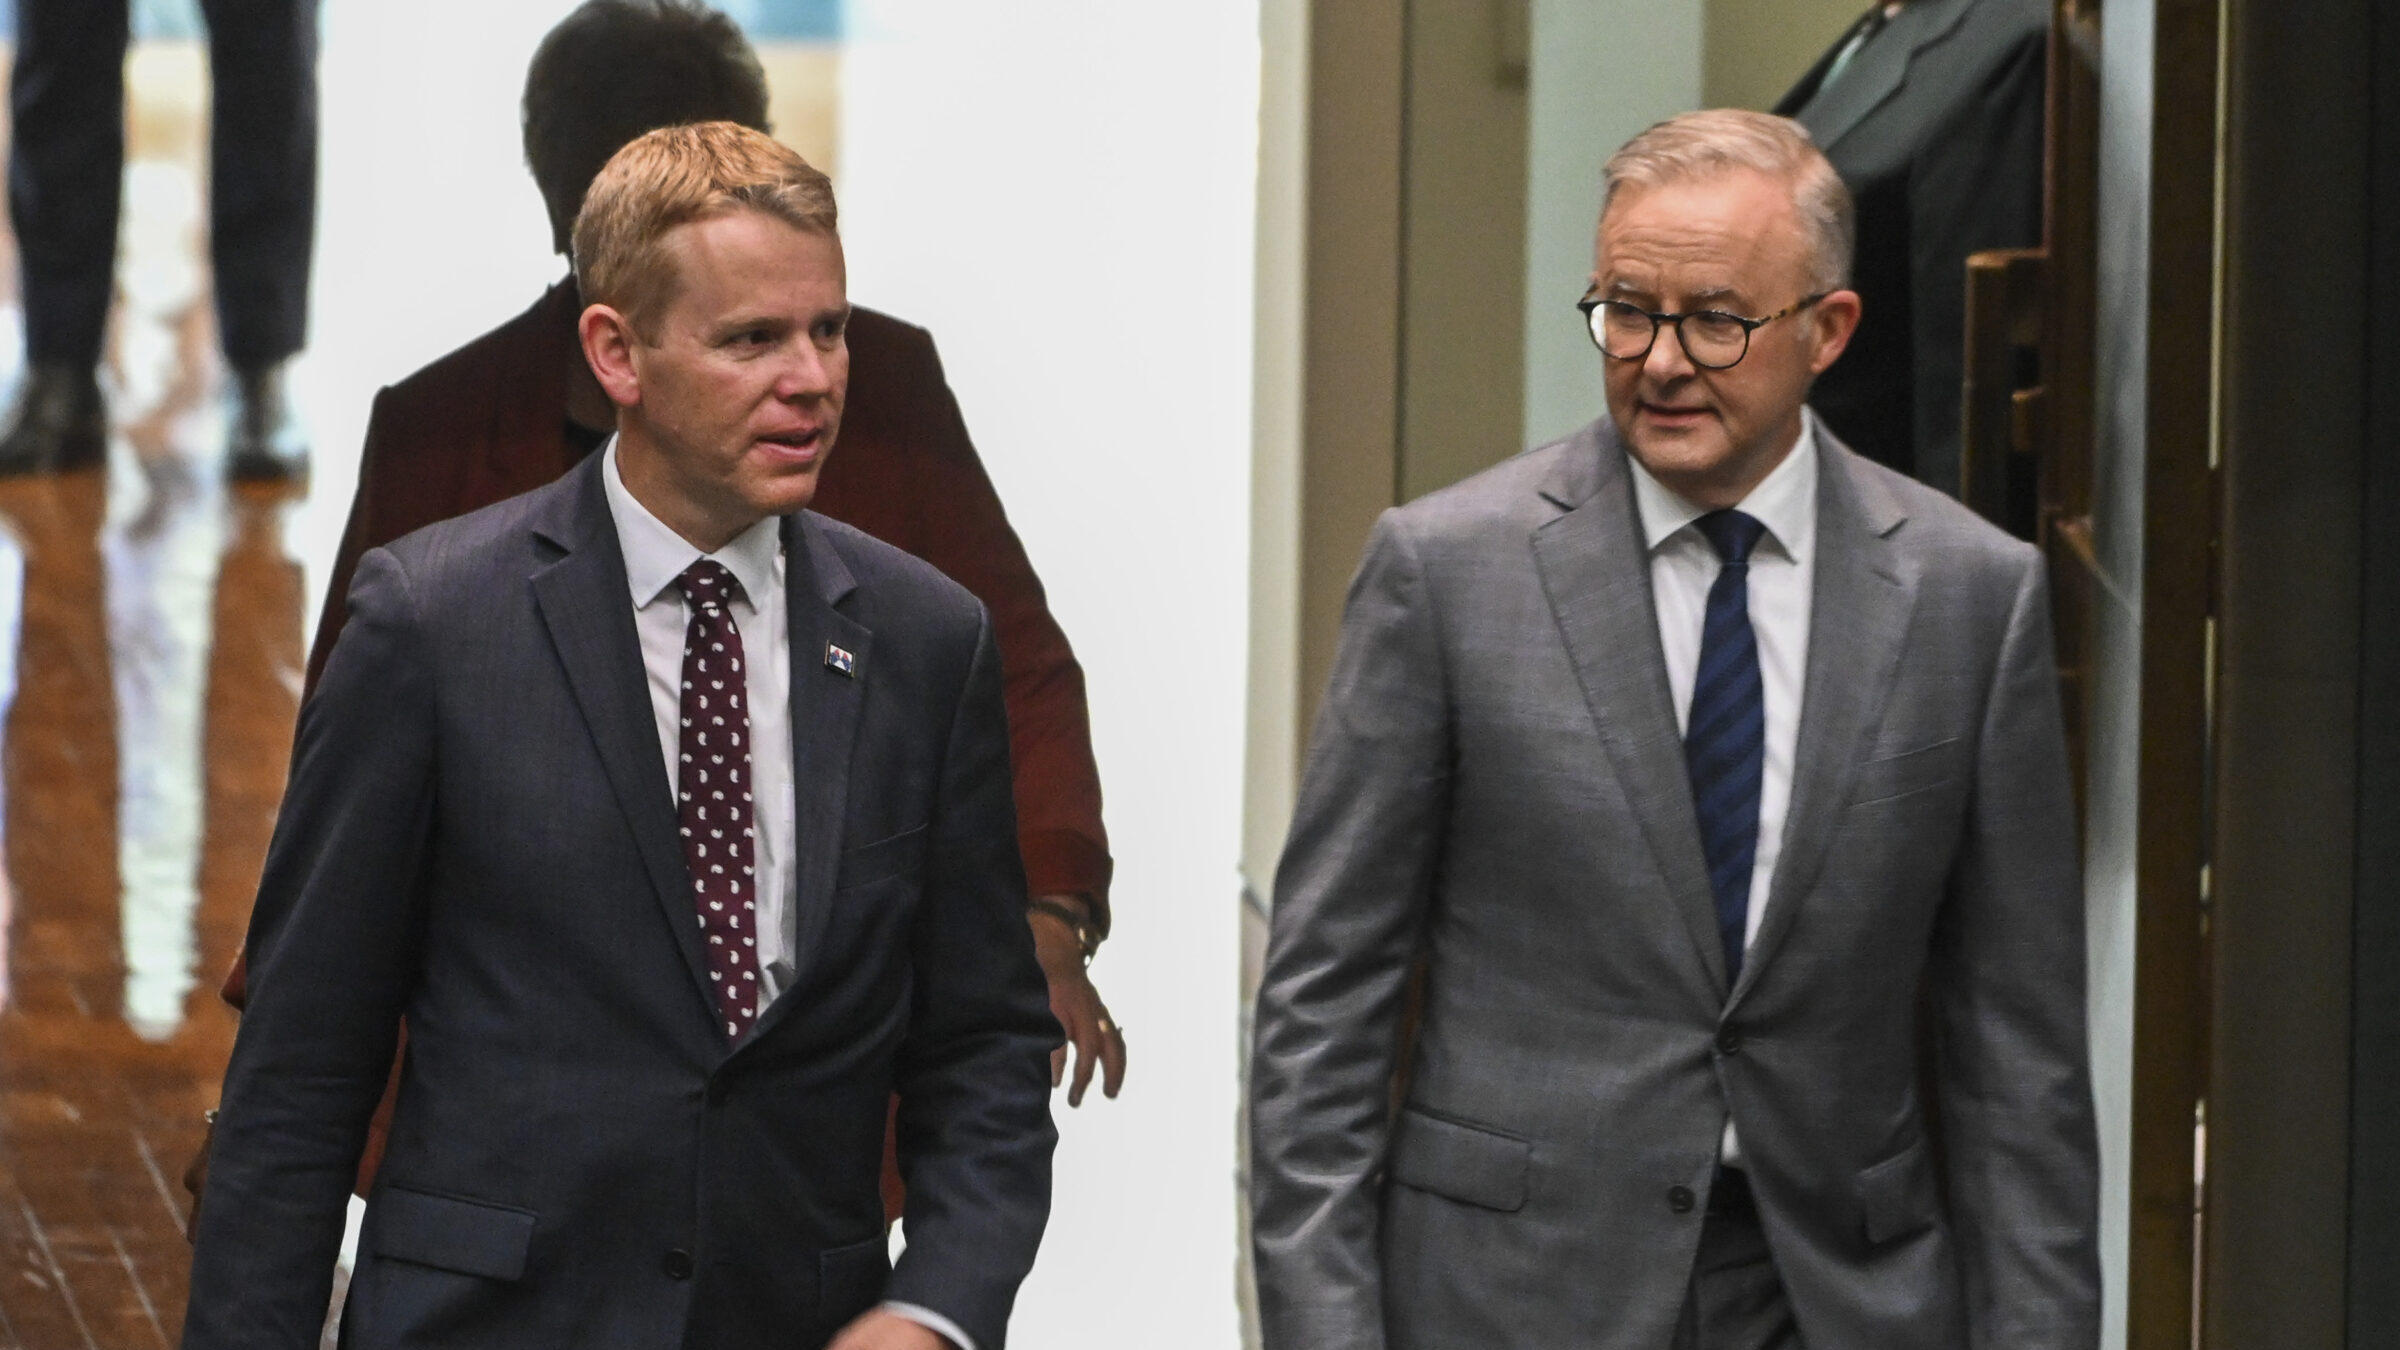 NZ’s Prime Minister Hipkins Vists Canberra